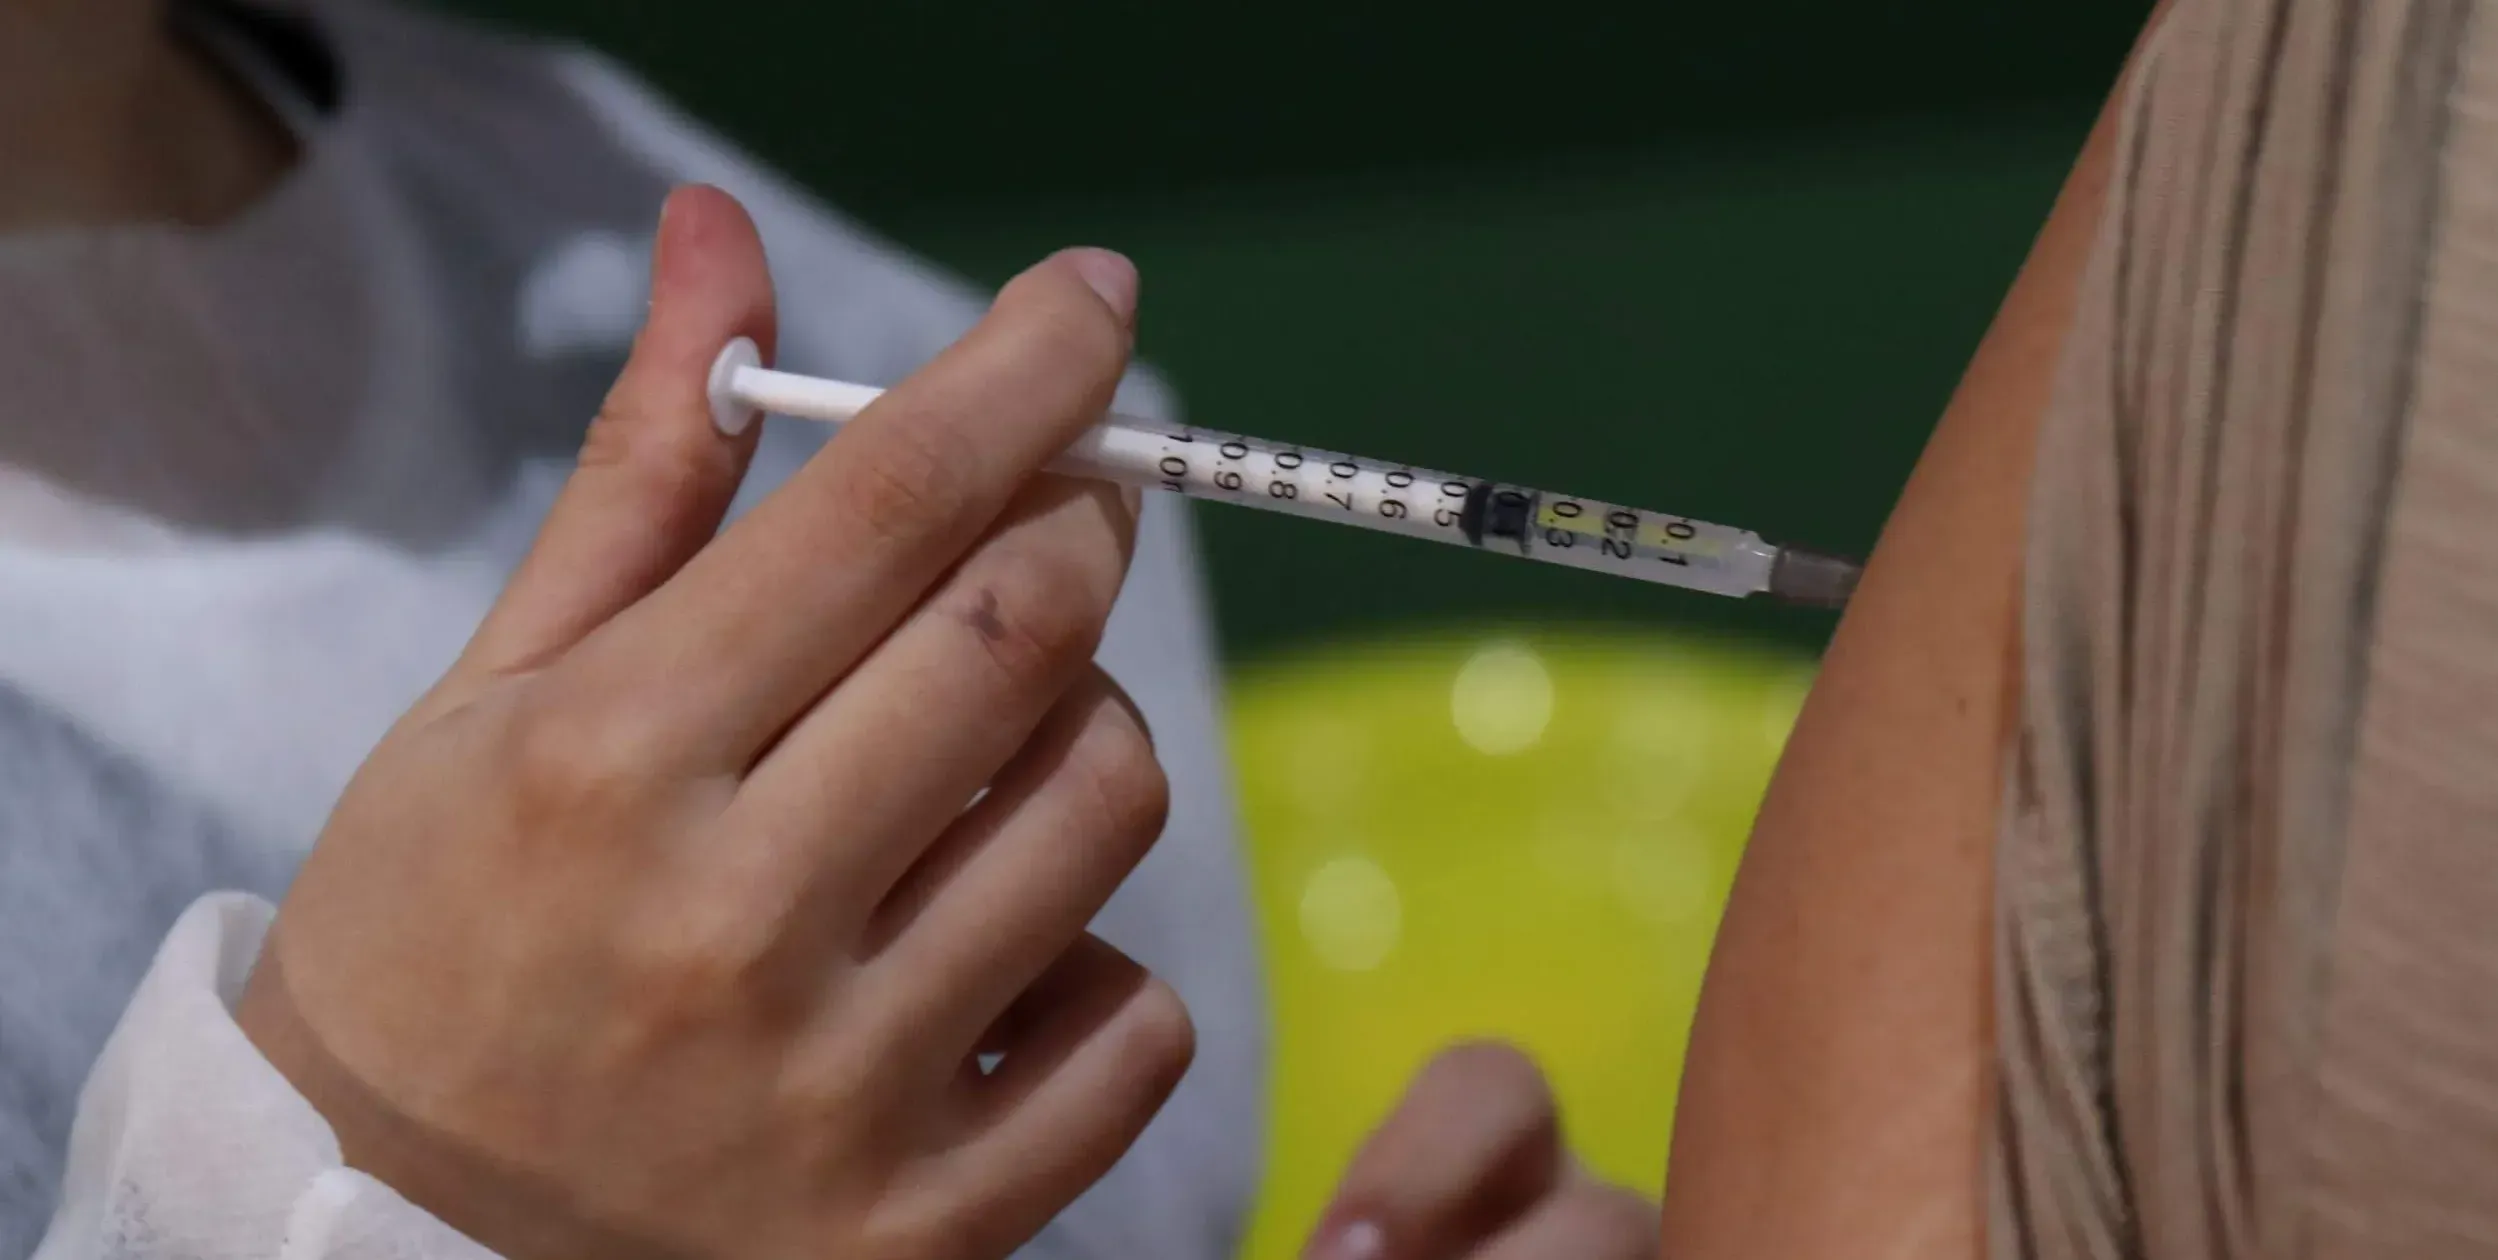  Para se vacinar no município, é preciso fazer o cadastro prévio no site VacinaJá 